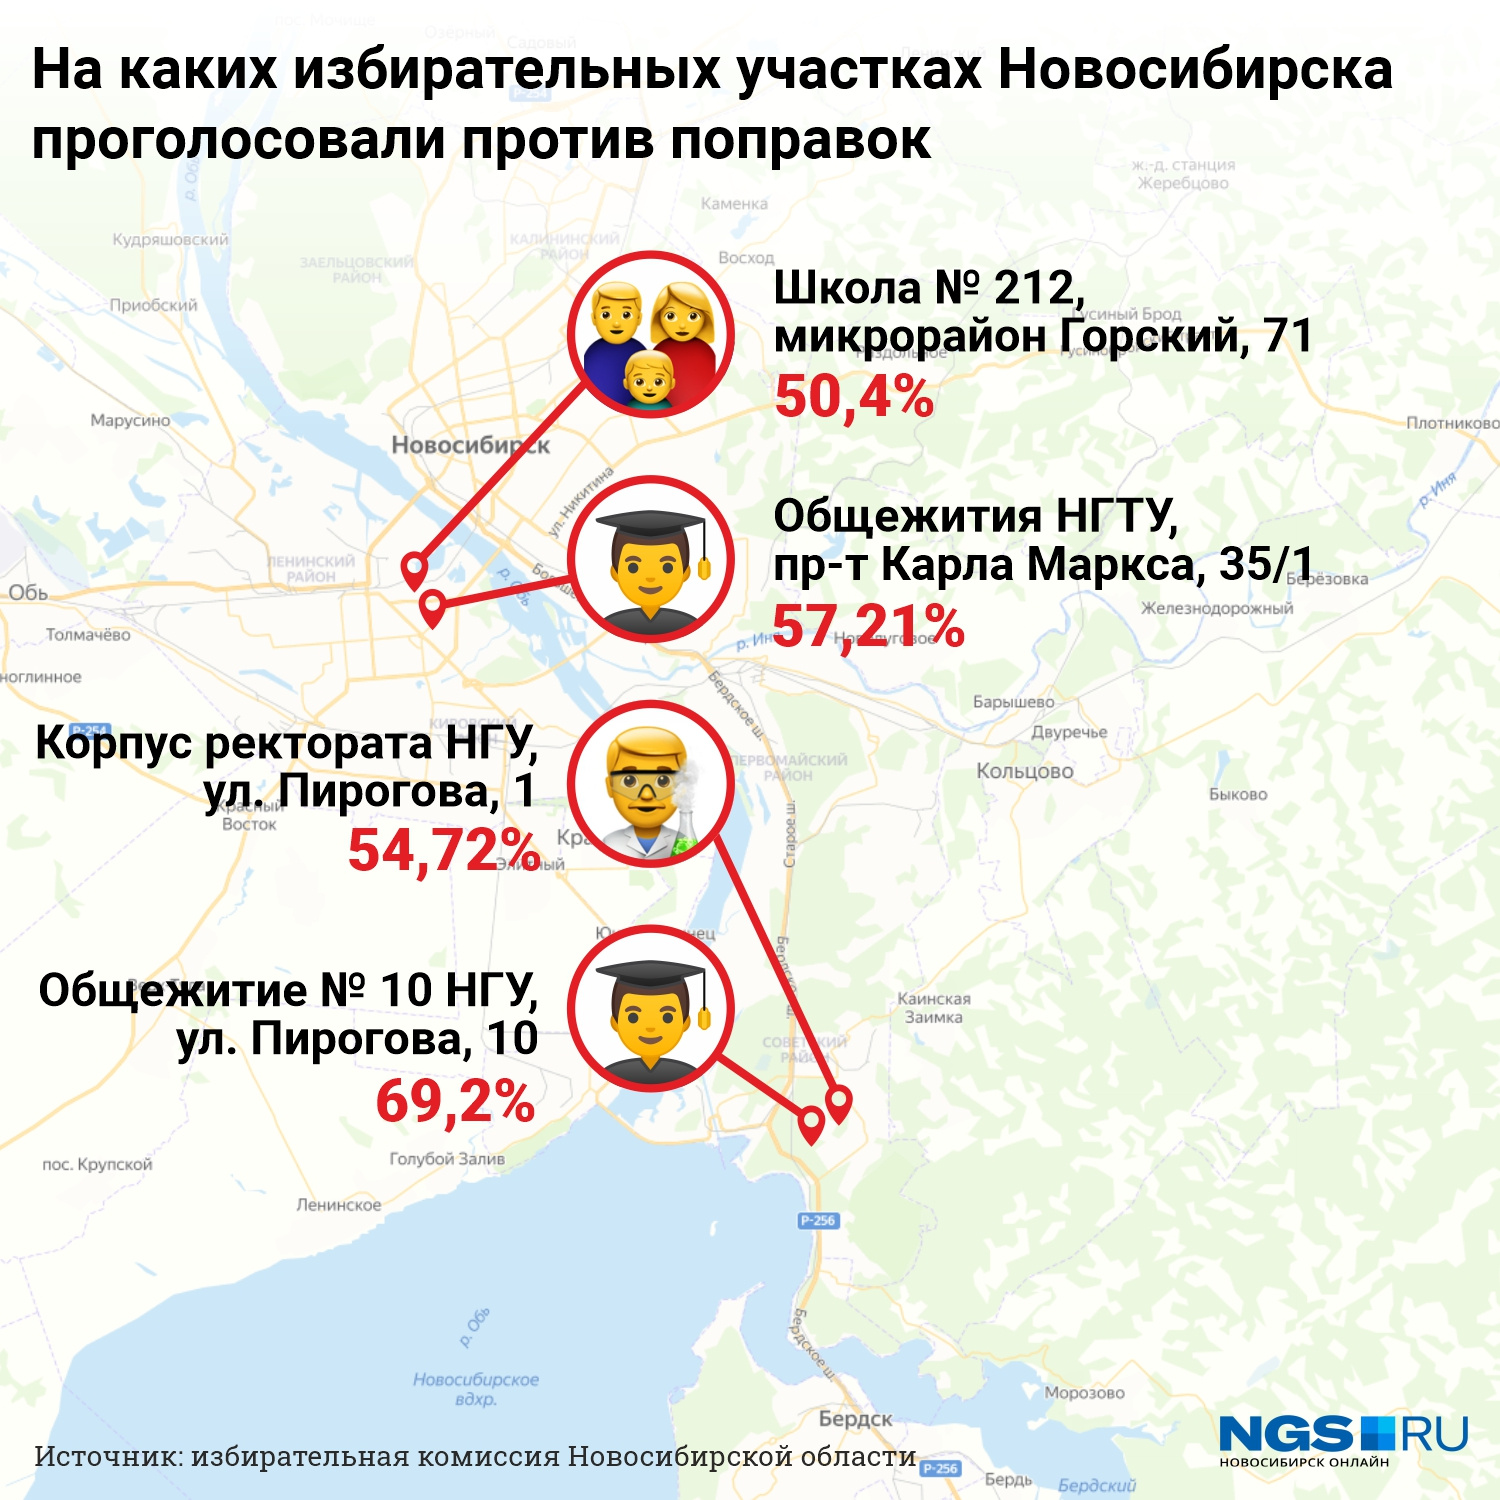 Где можно проголосовать в новосибирске. Инфографика Орел.